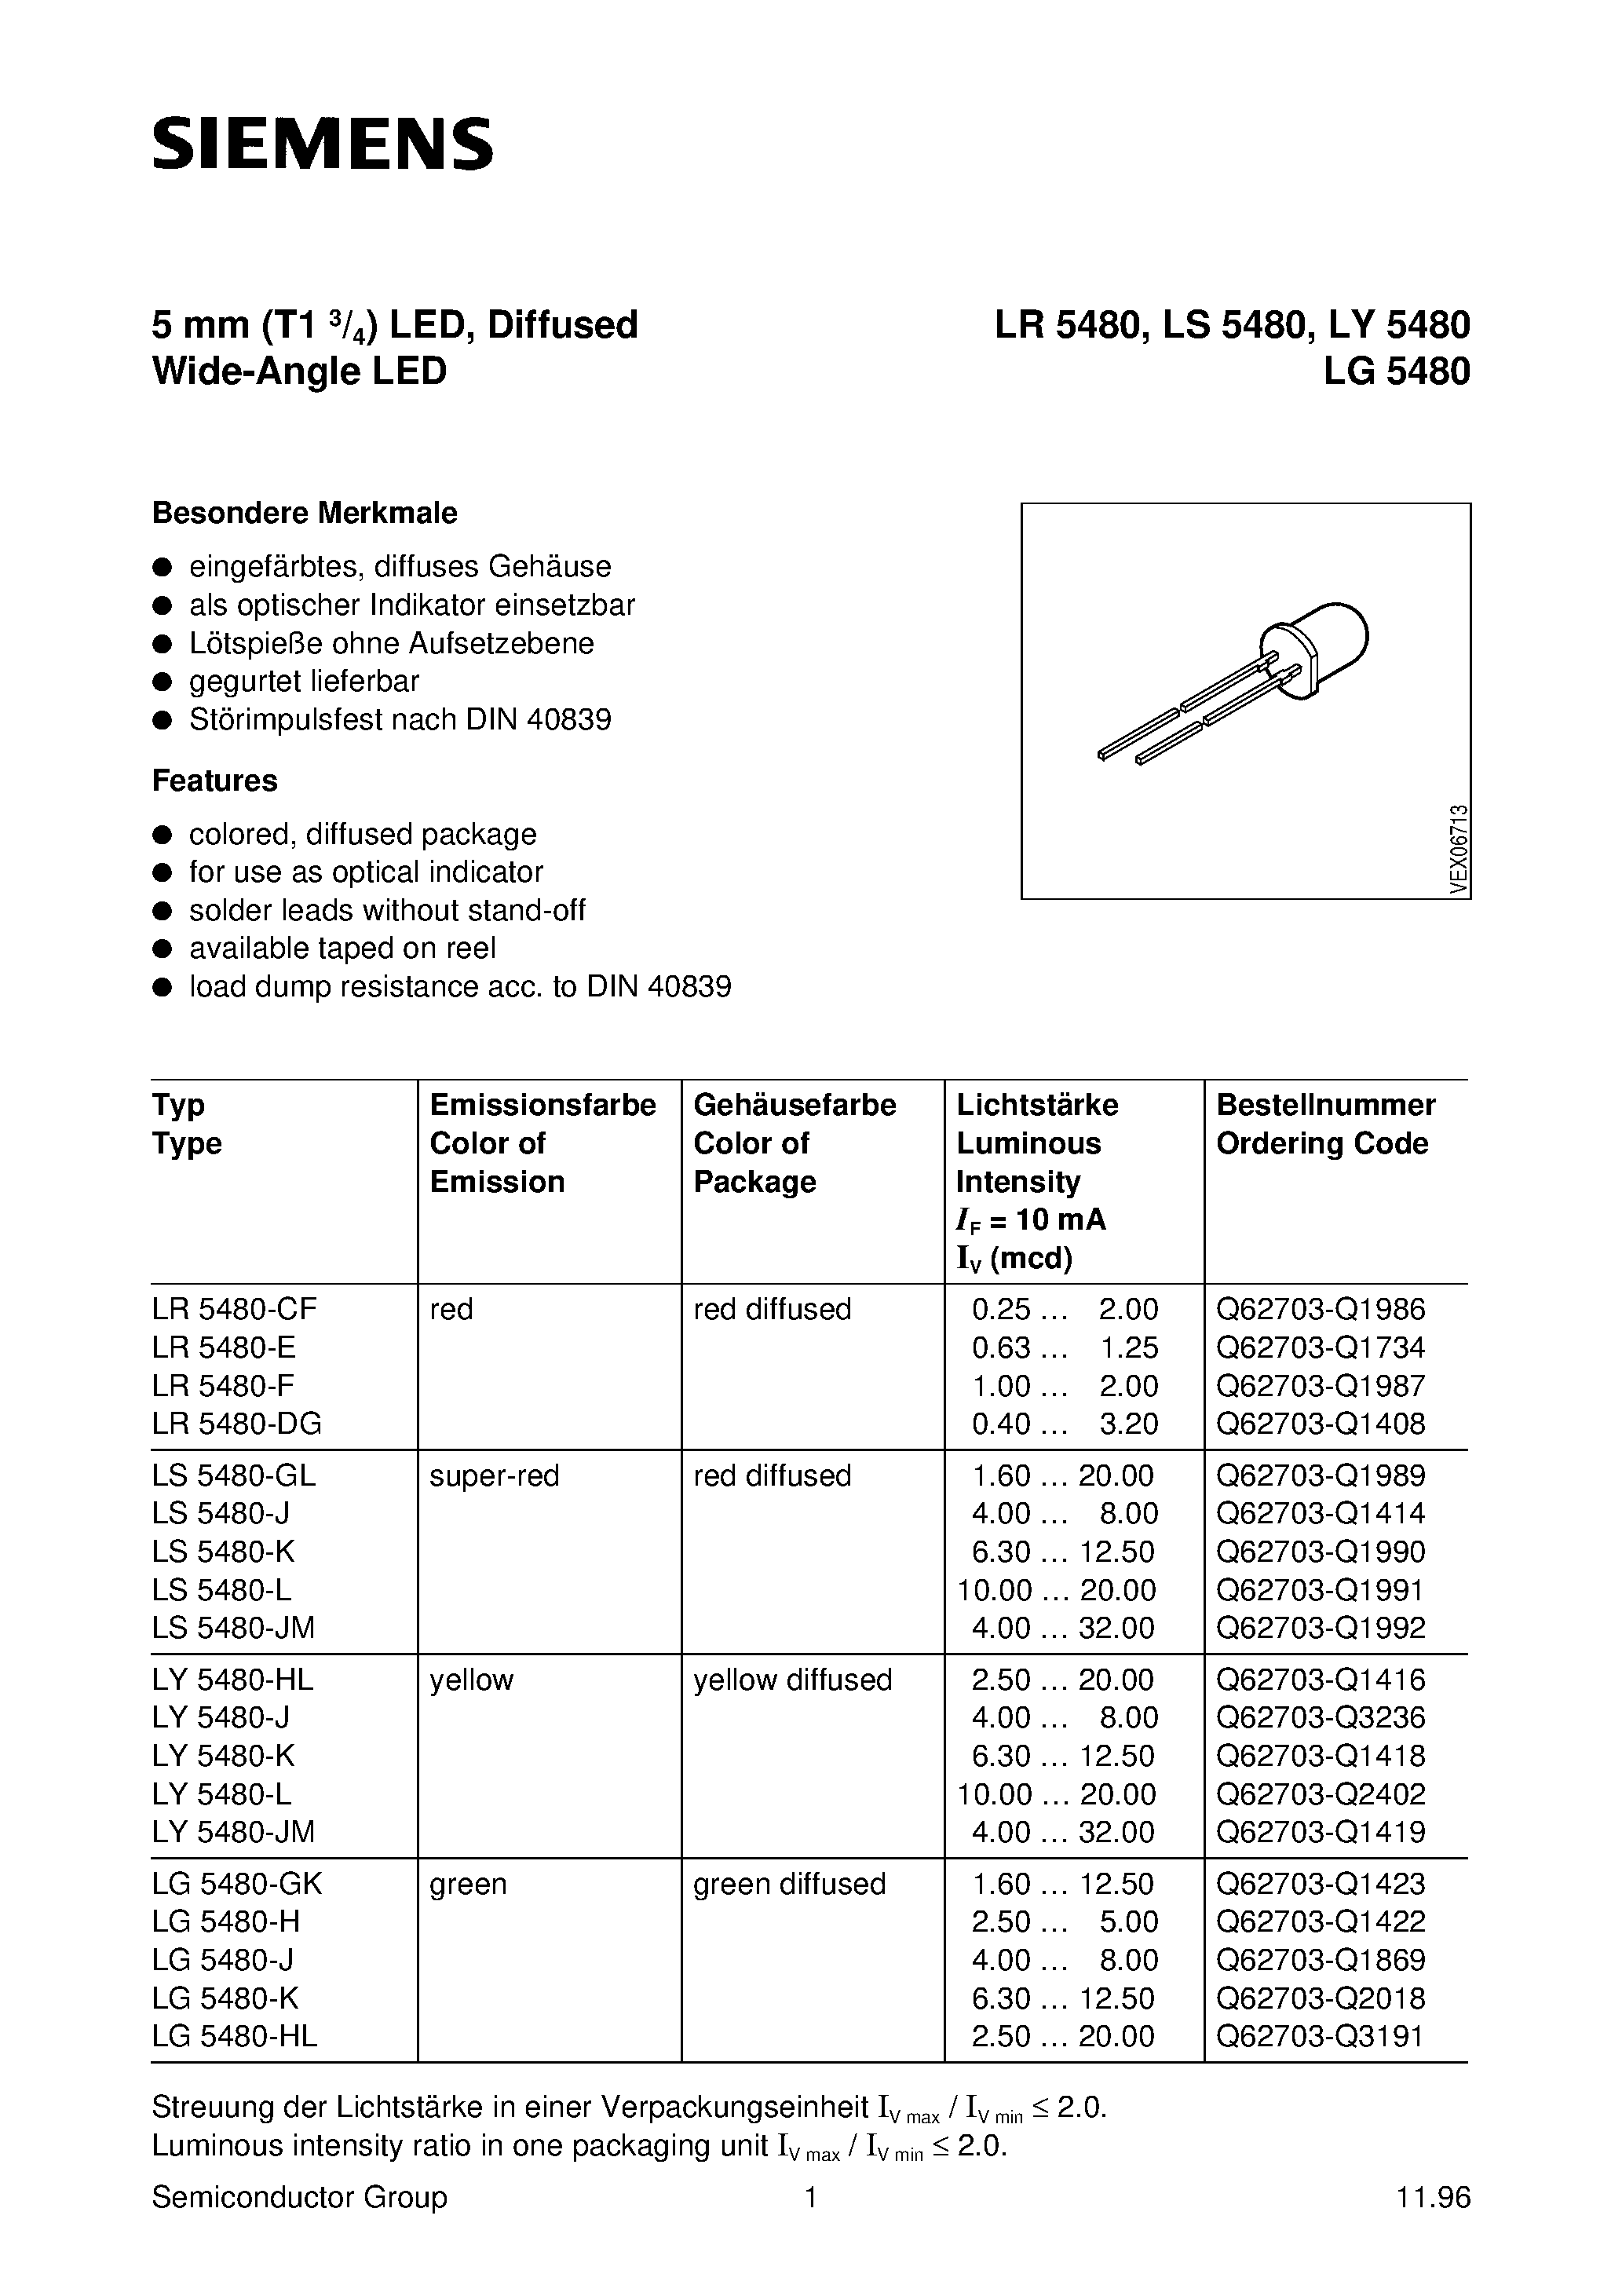 Datasheet LY5480-K - T1 (5mm) LED LAMP page 1